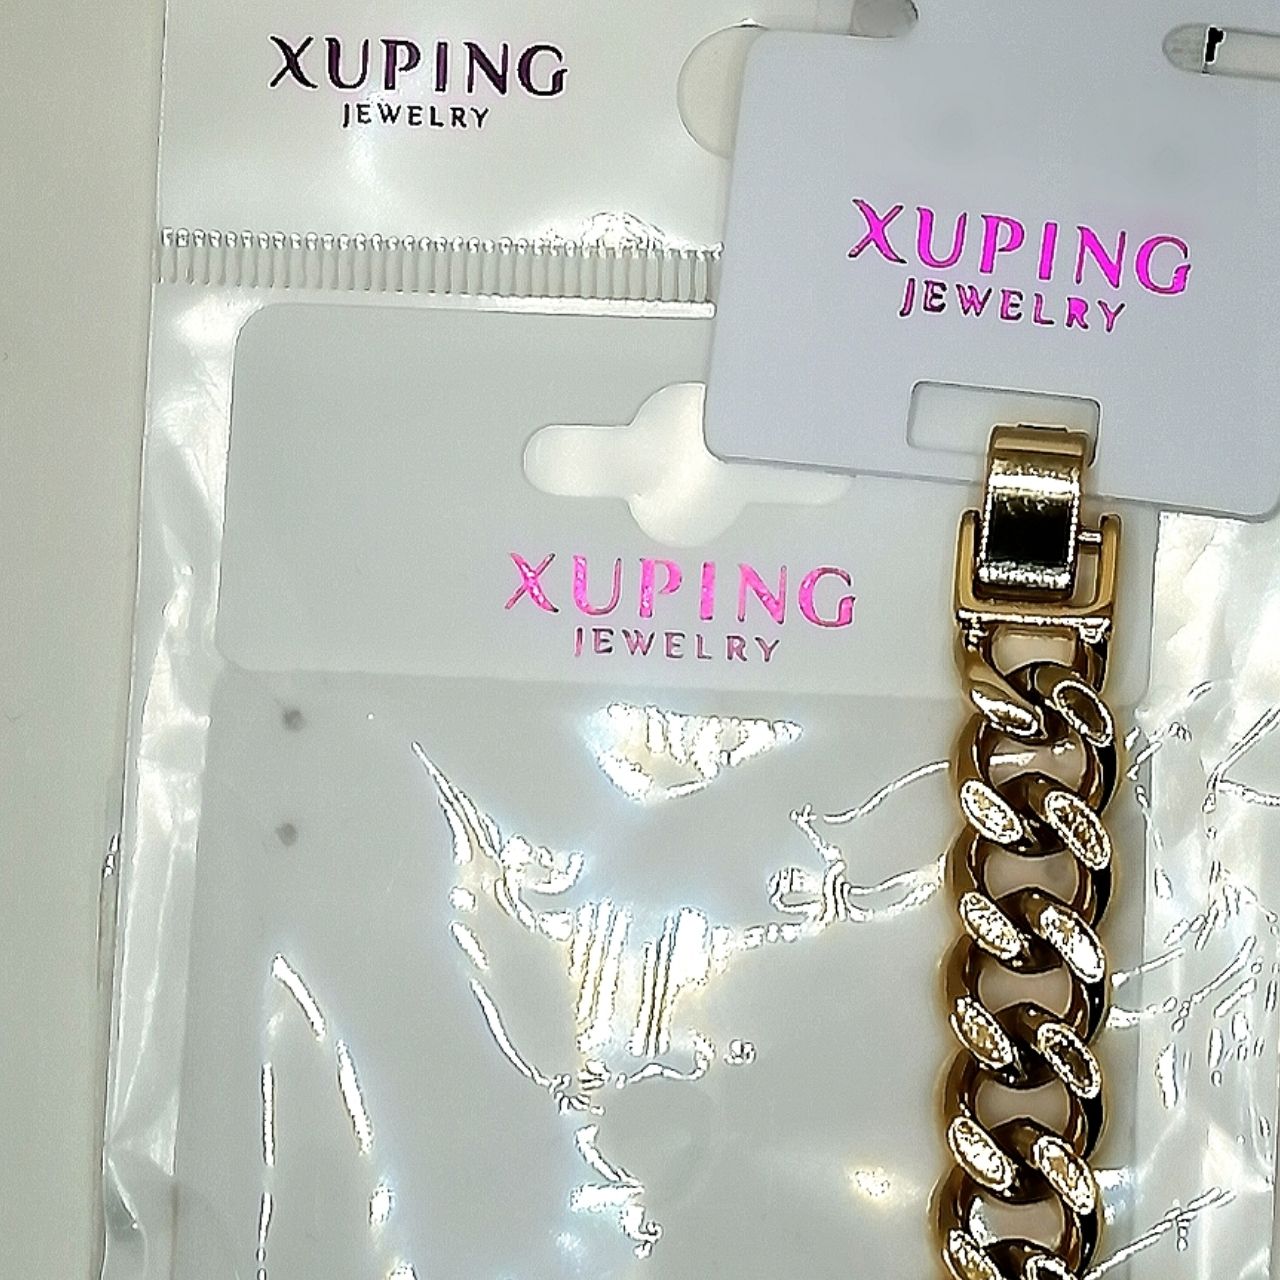 دستبند زنانه ژوپینگ مدل xu01 -  - 5